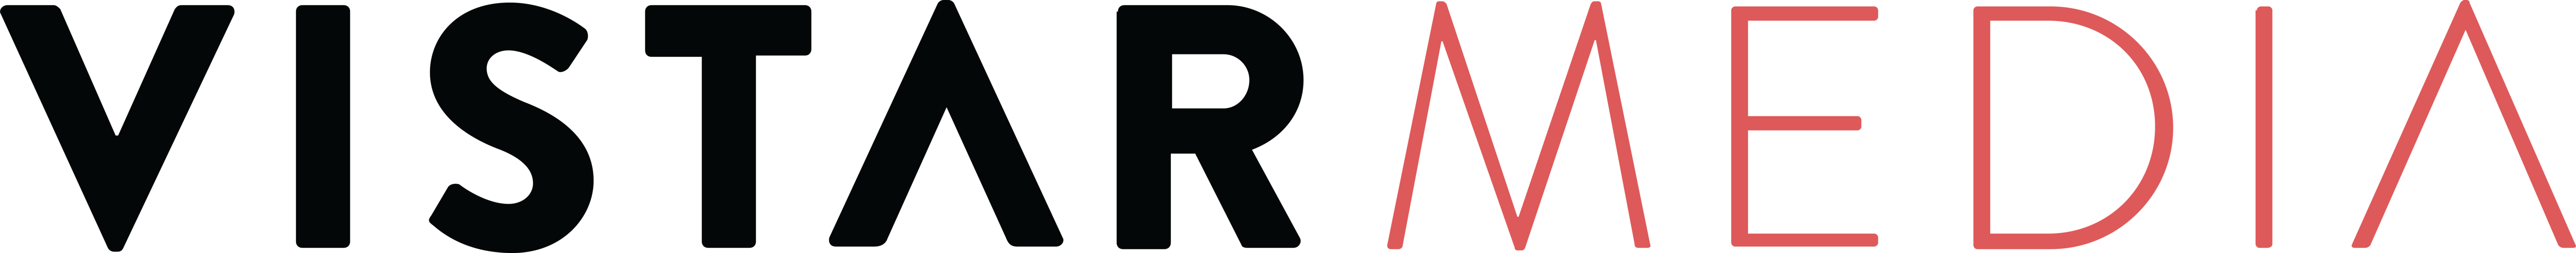 Vistar-Media-Logo